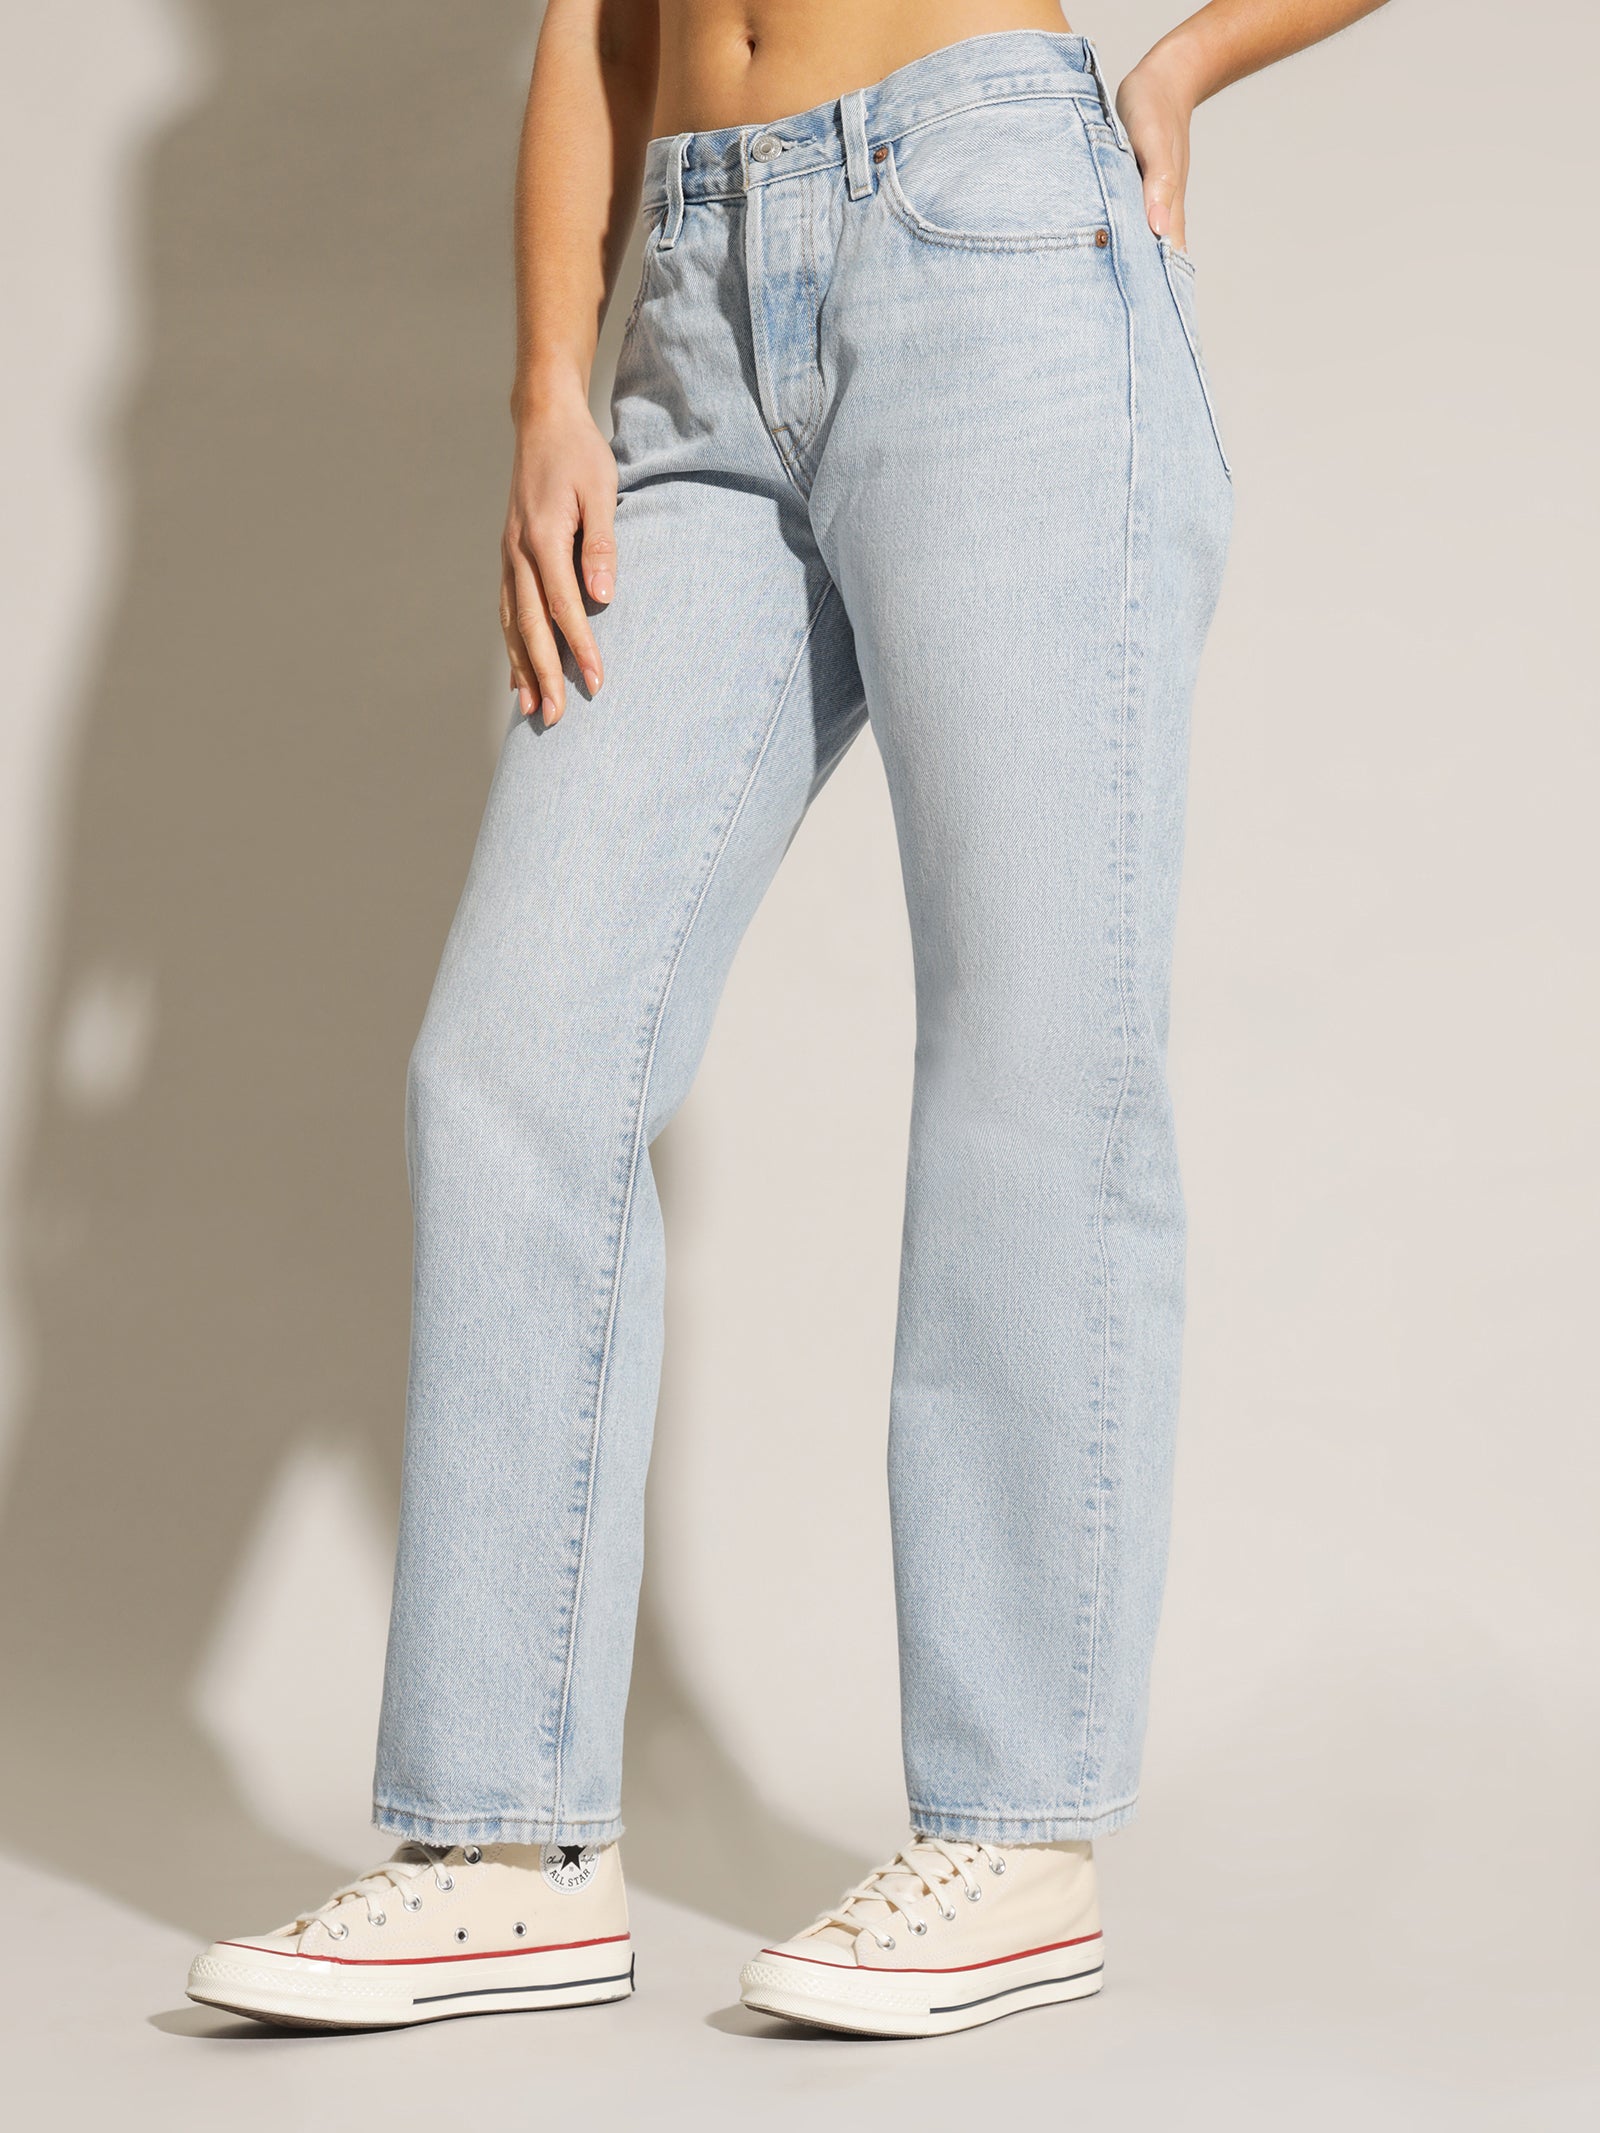 90s 501 Jeans in Worn In Light Indigo